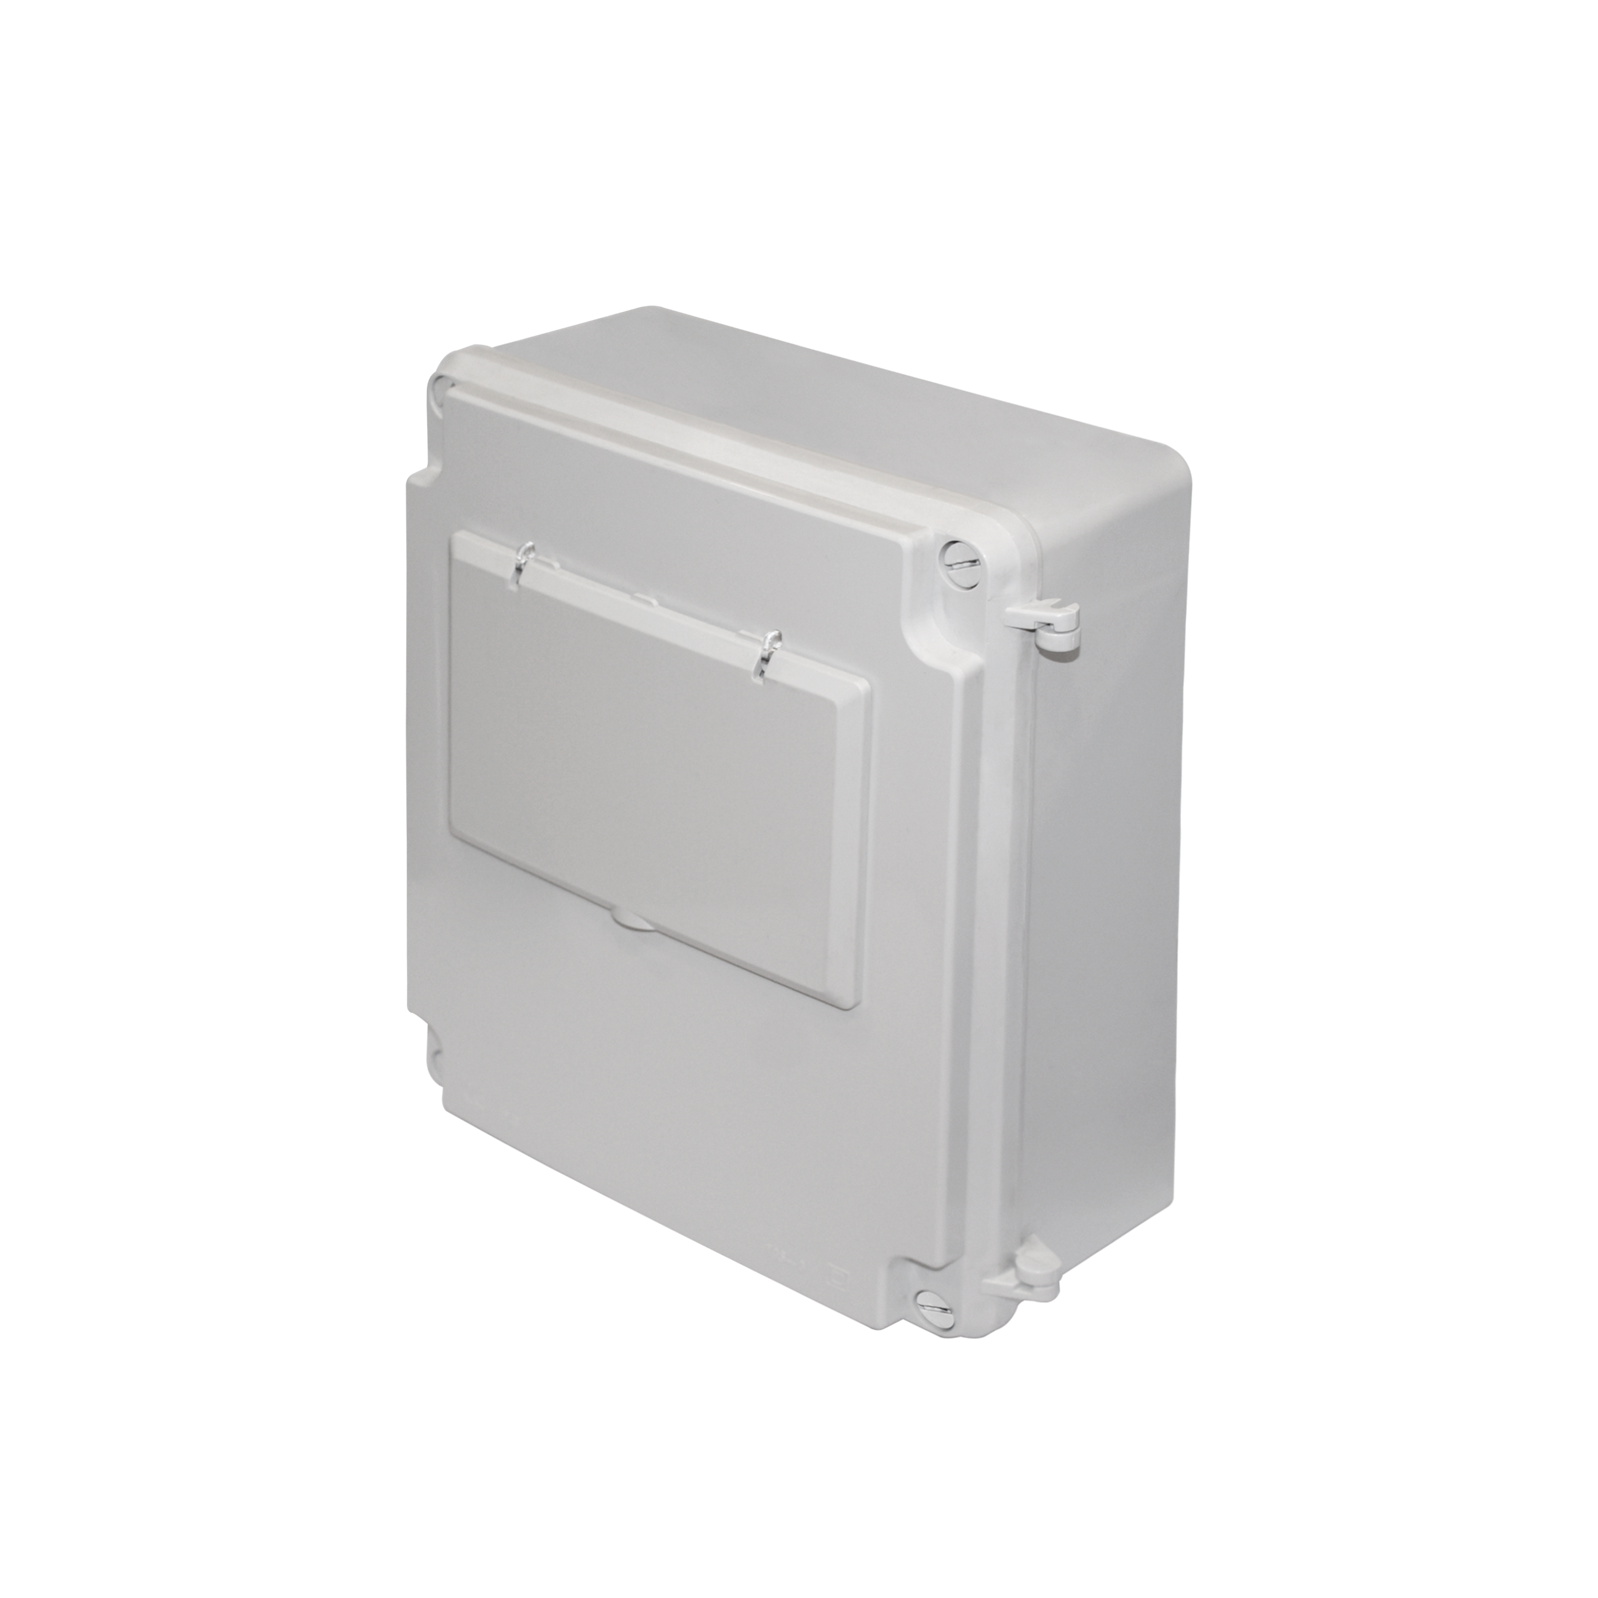 Caja de material plástico con módulo porta-objetos interno, vacía BETA C16  - SIA Suministros